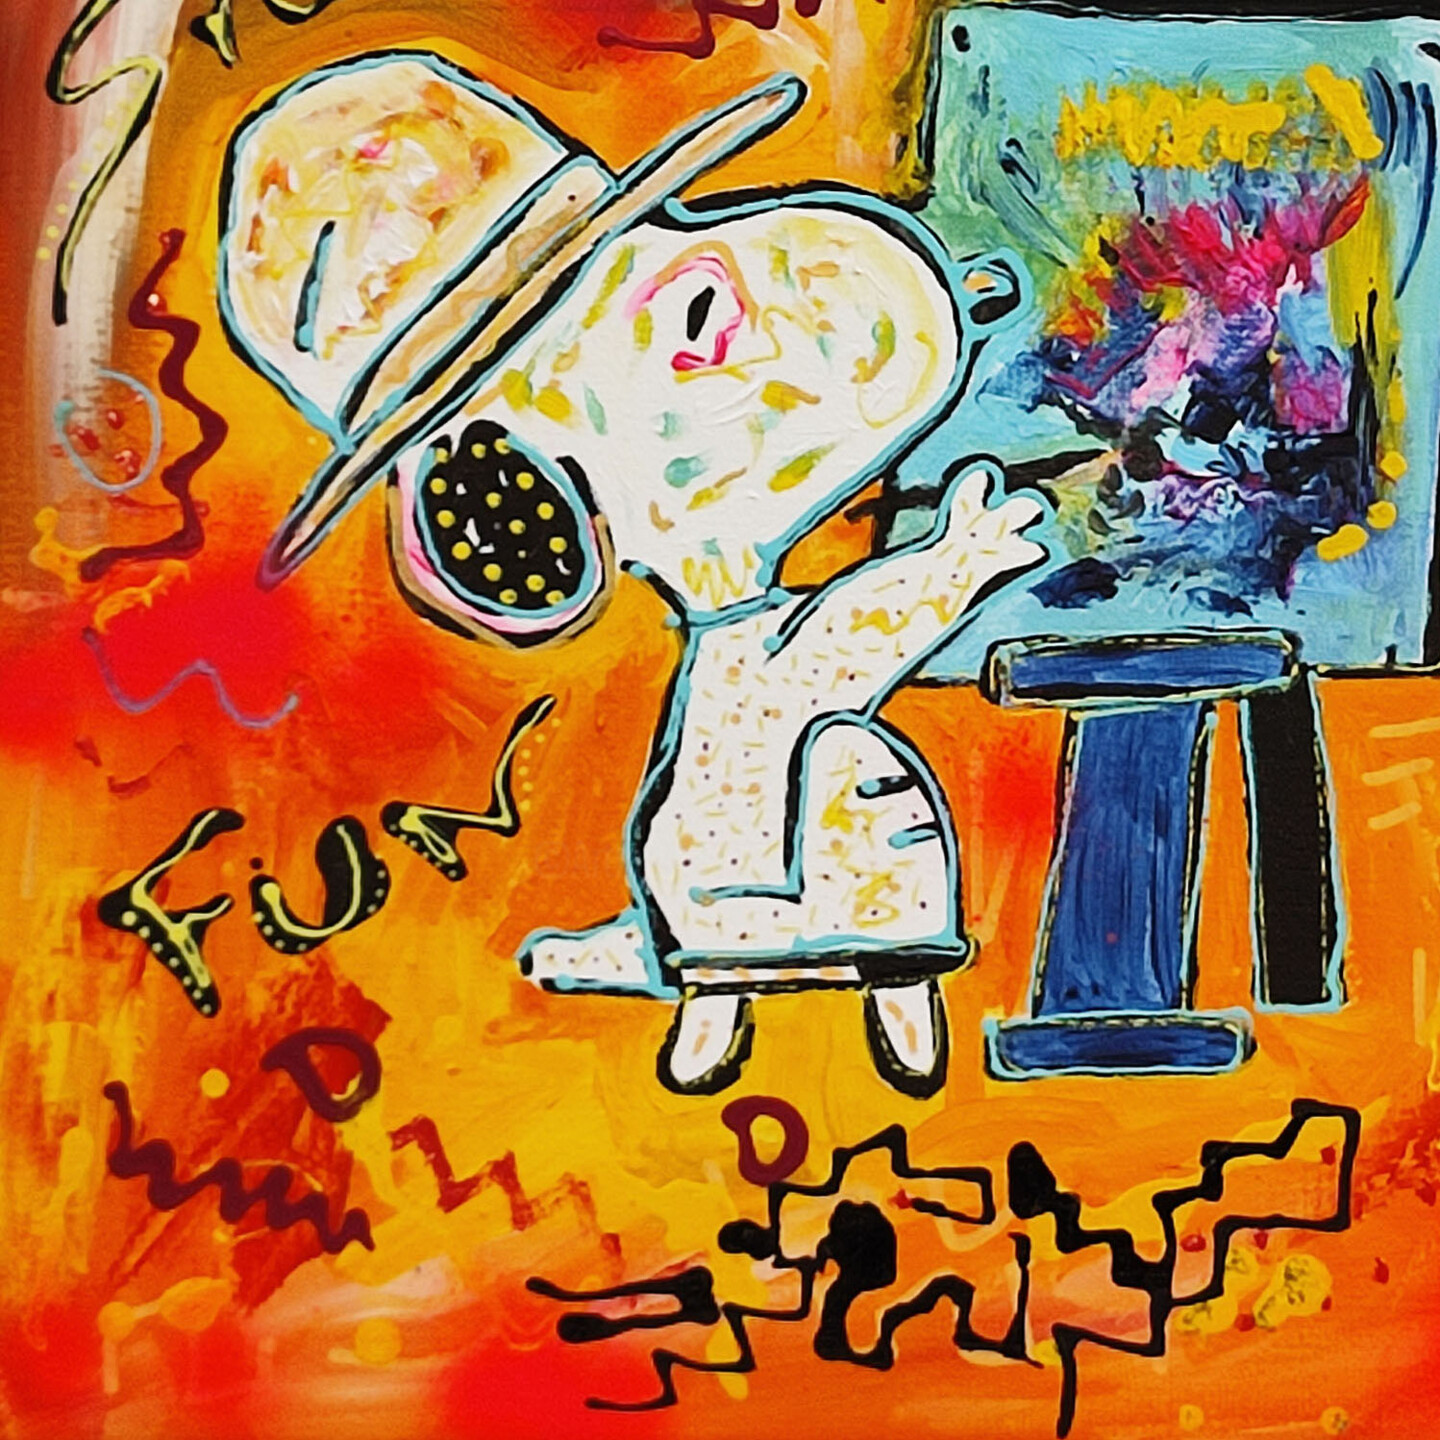 Peinture pop art de Snoopy et Woodstock : œuvre d'art abstraite unique